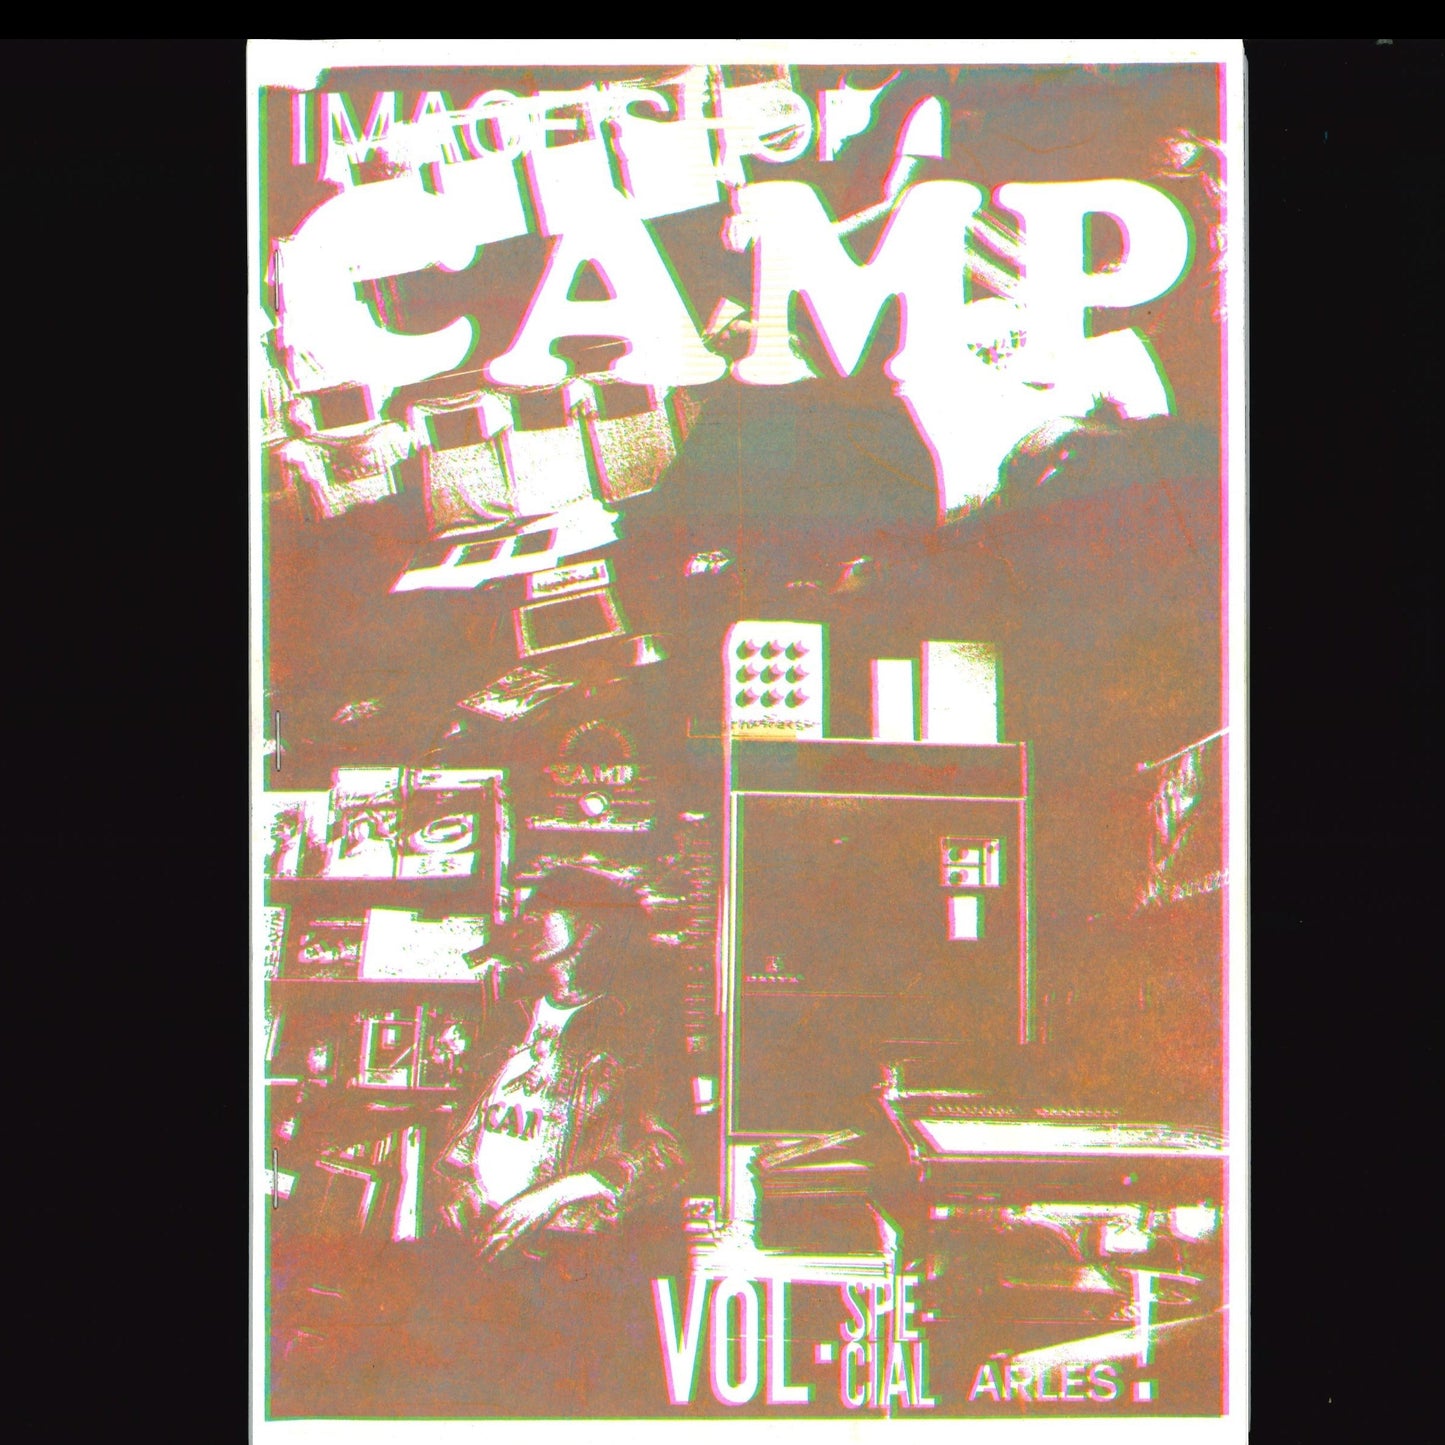 Image Shop Camp Vol - Spécial Arles ! (FANZINE VERSION)